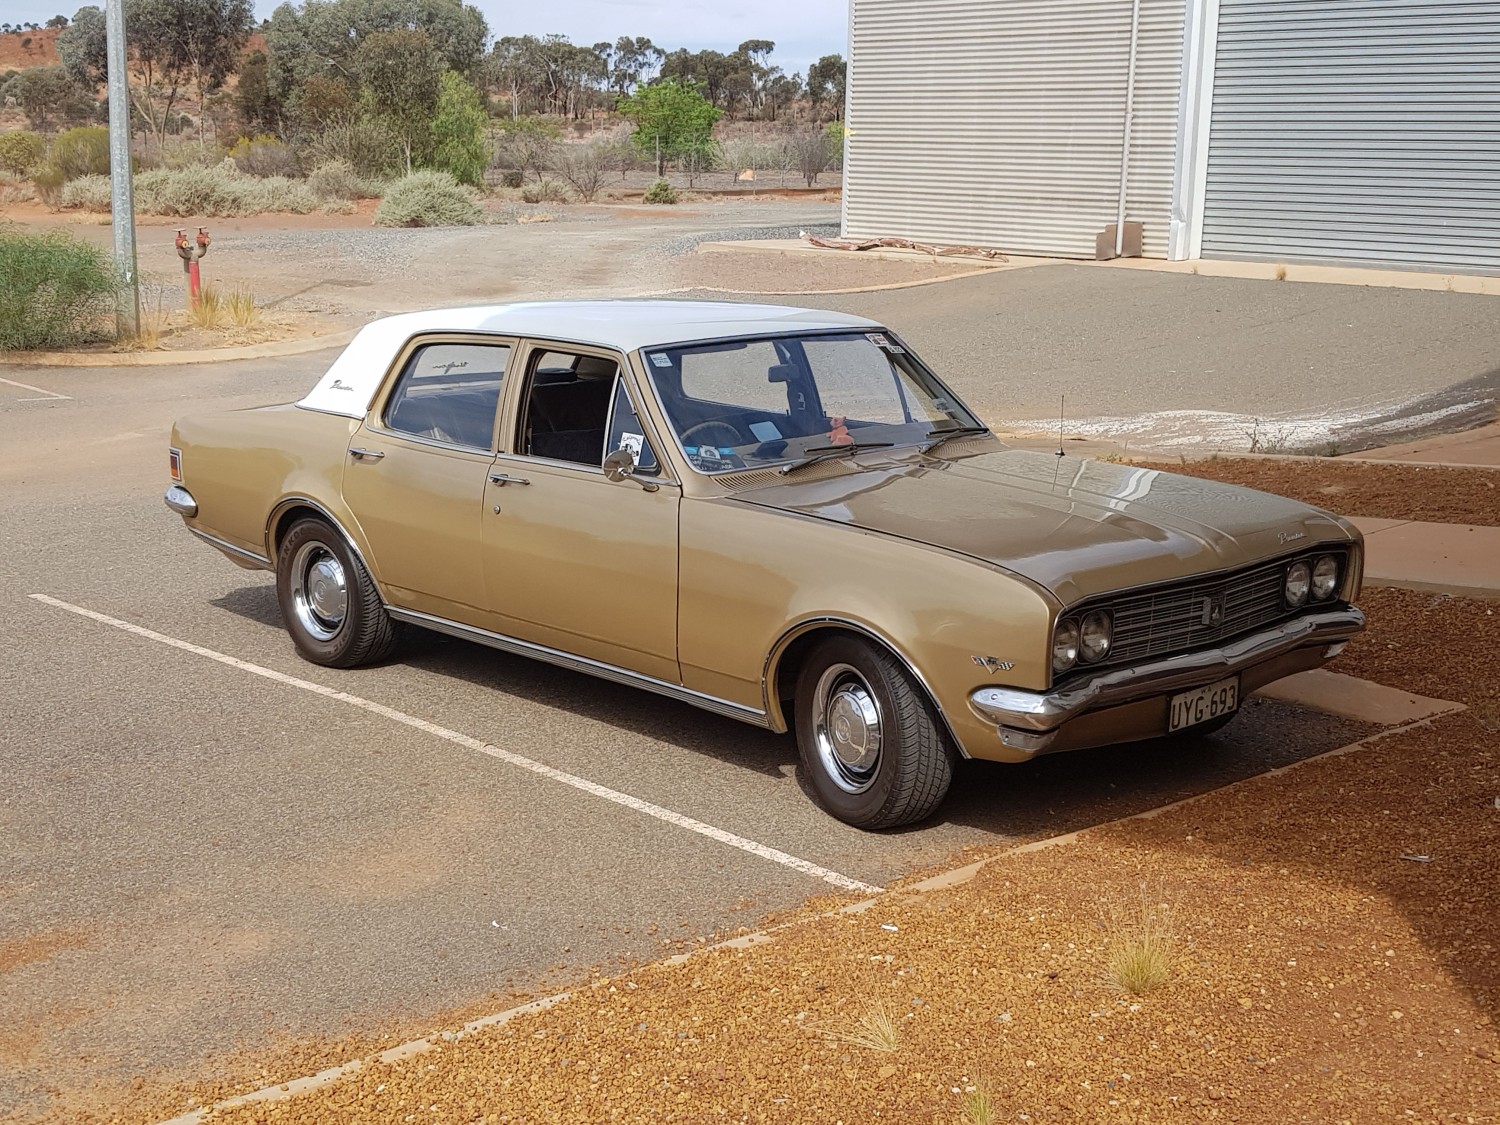 1971 Holden Hg premier